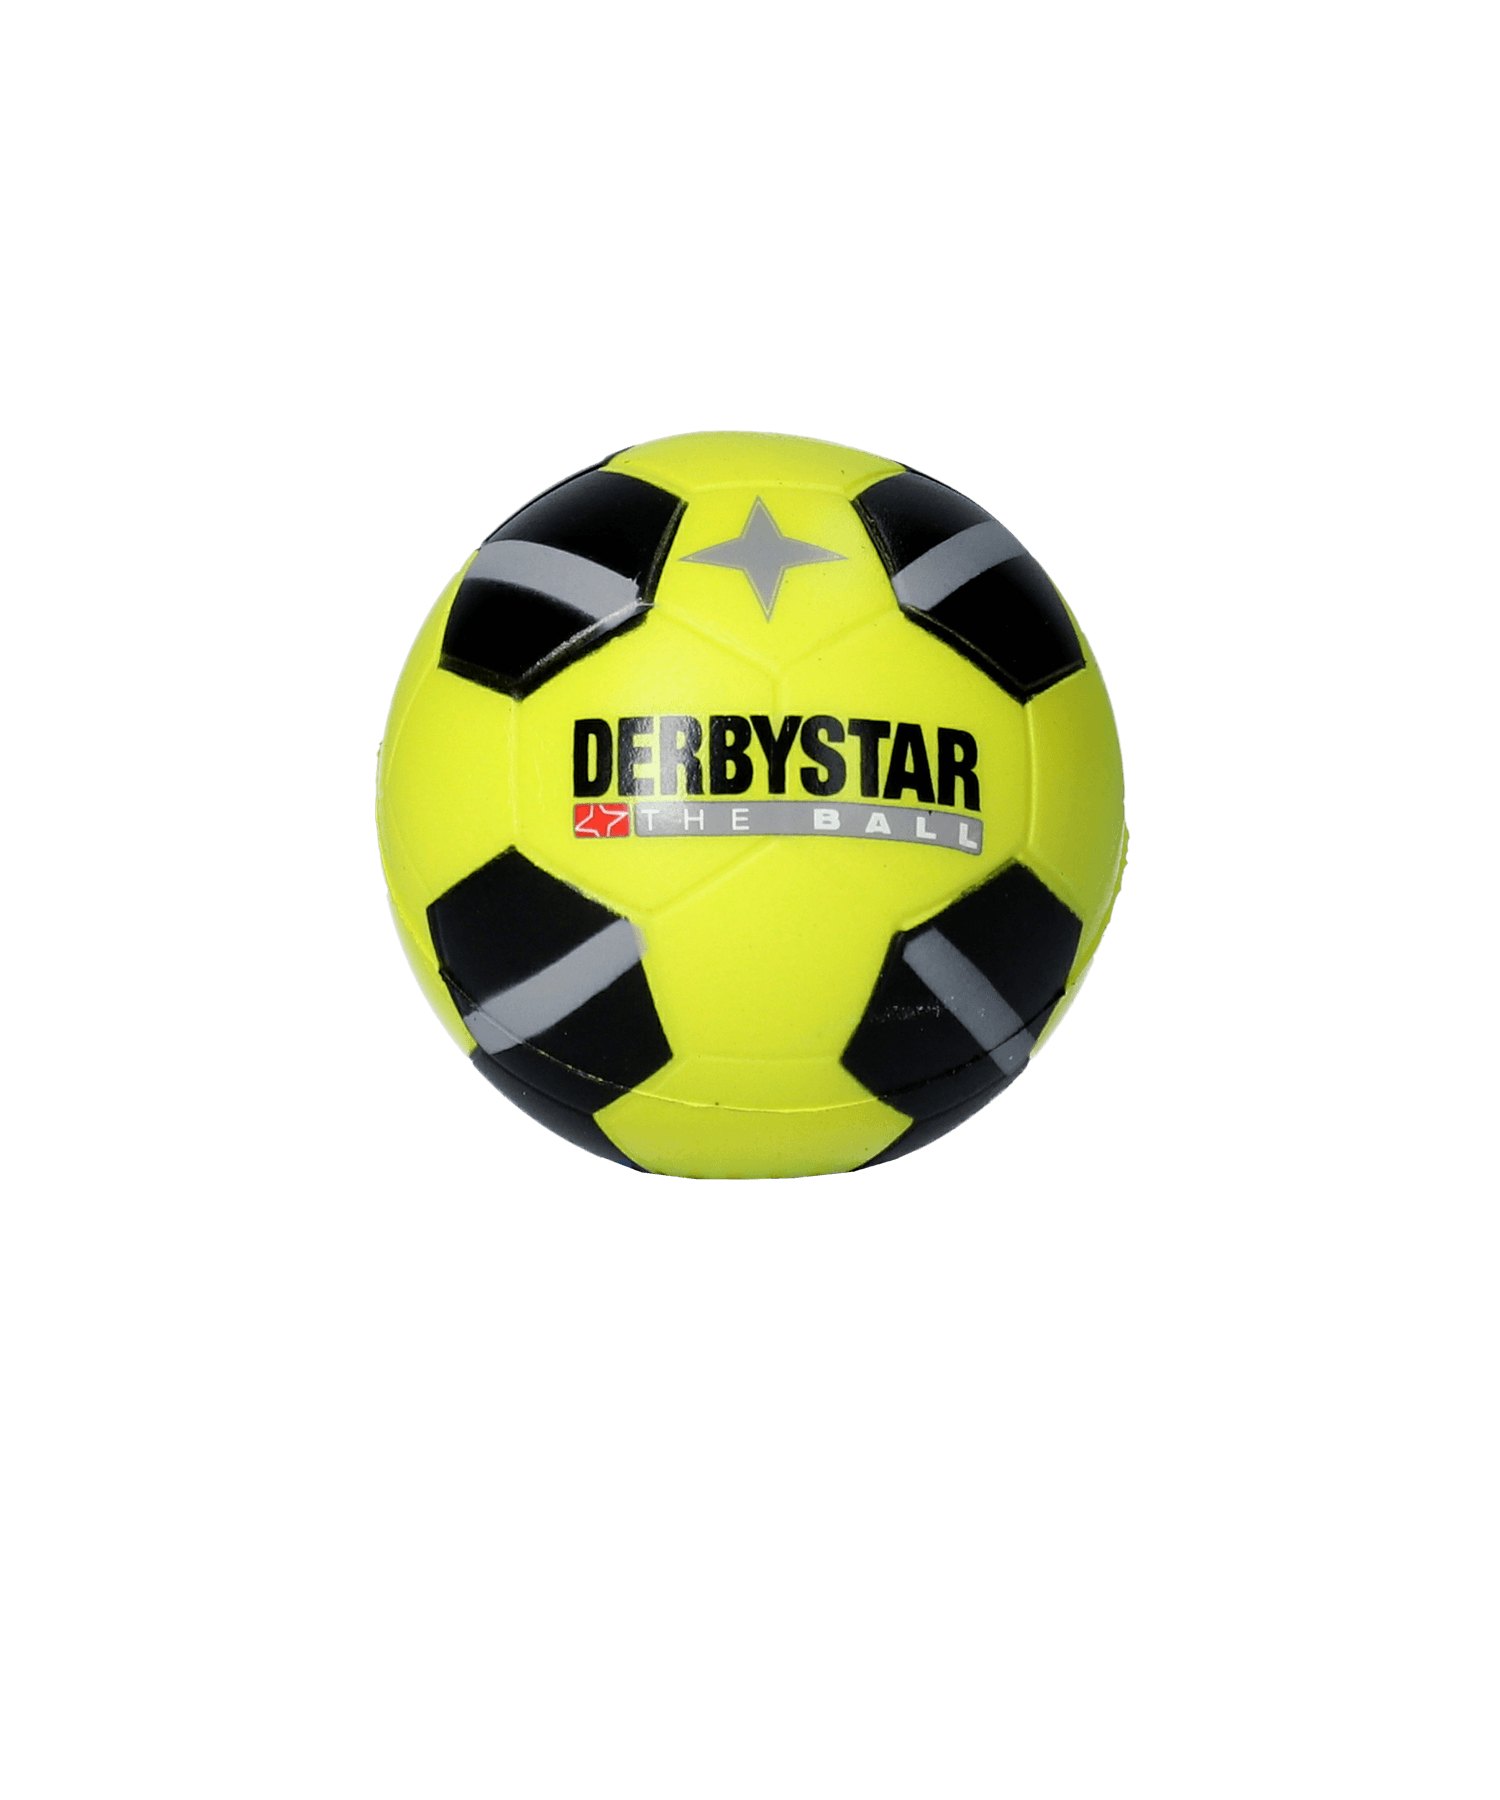 Derbystar Minisoftball Schwarz Gelb F500 - schwarz